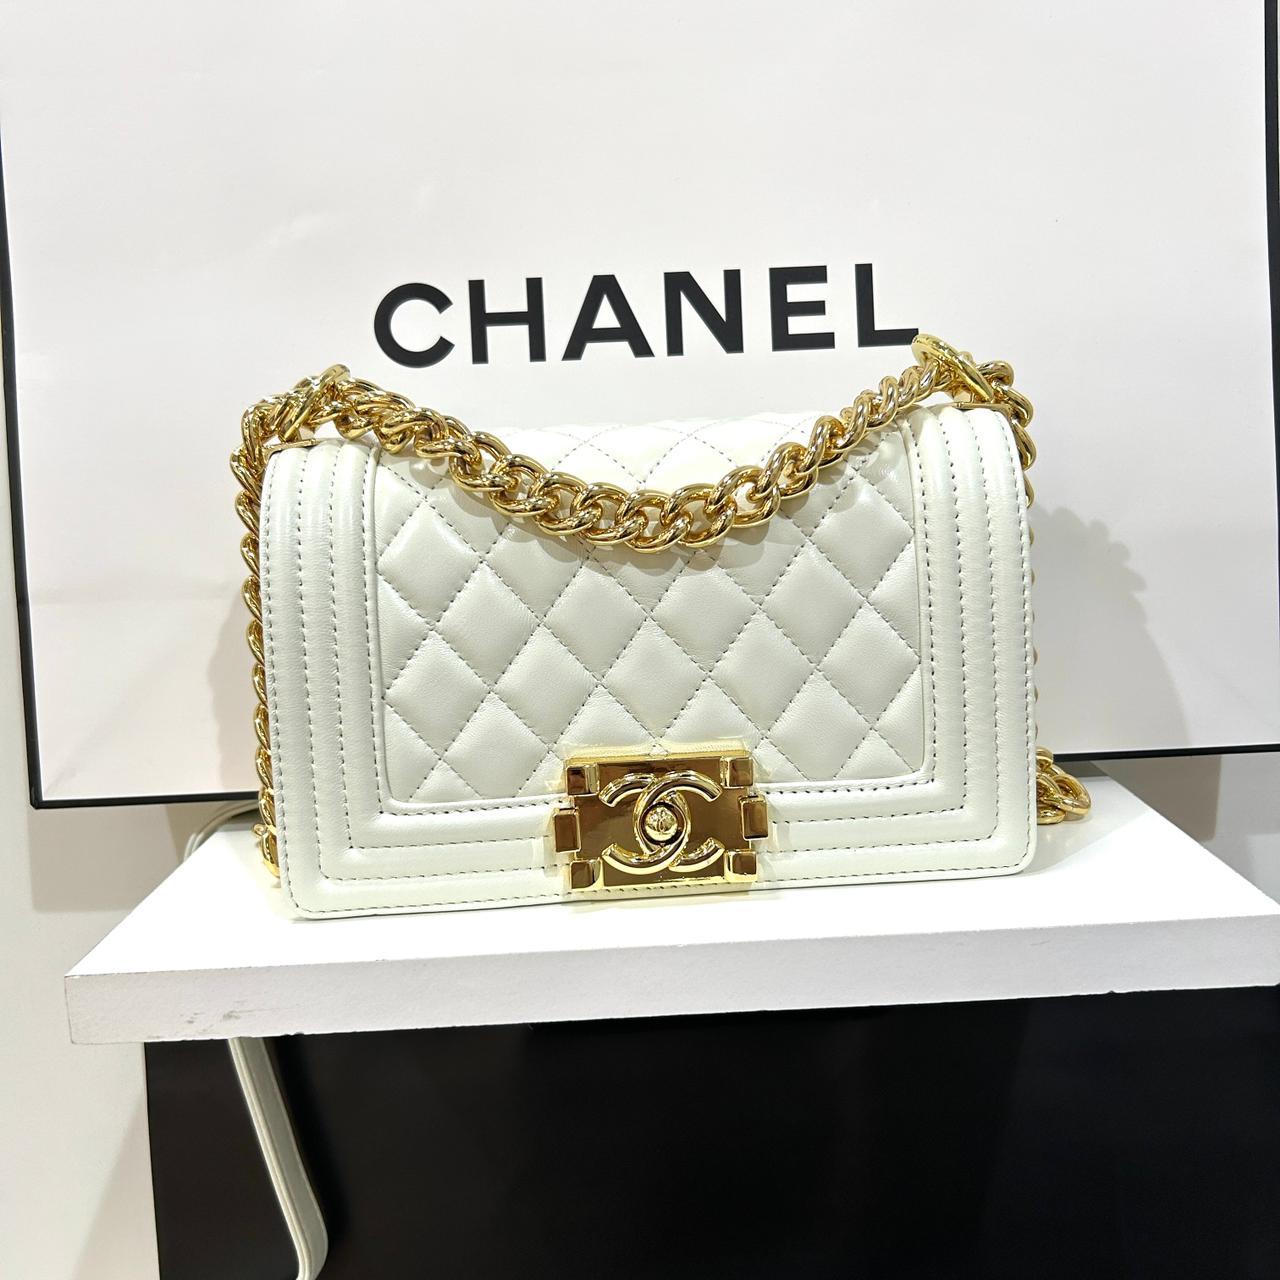 Chanel Boy Small Bag